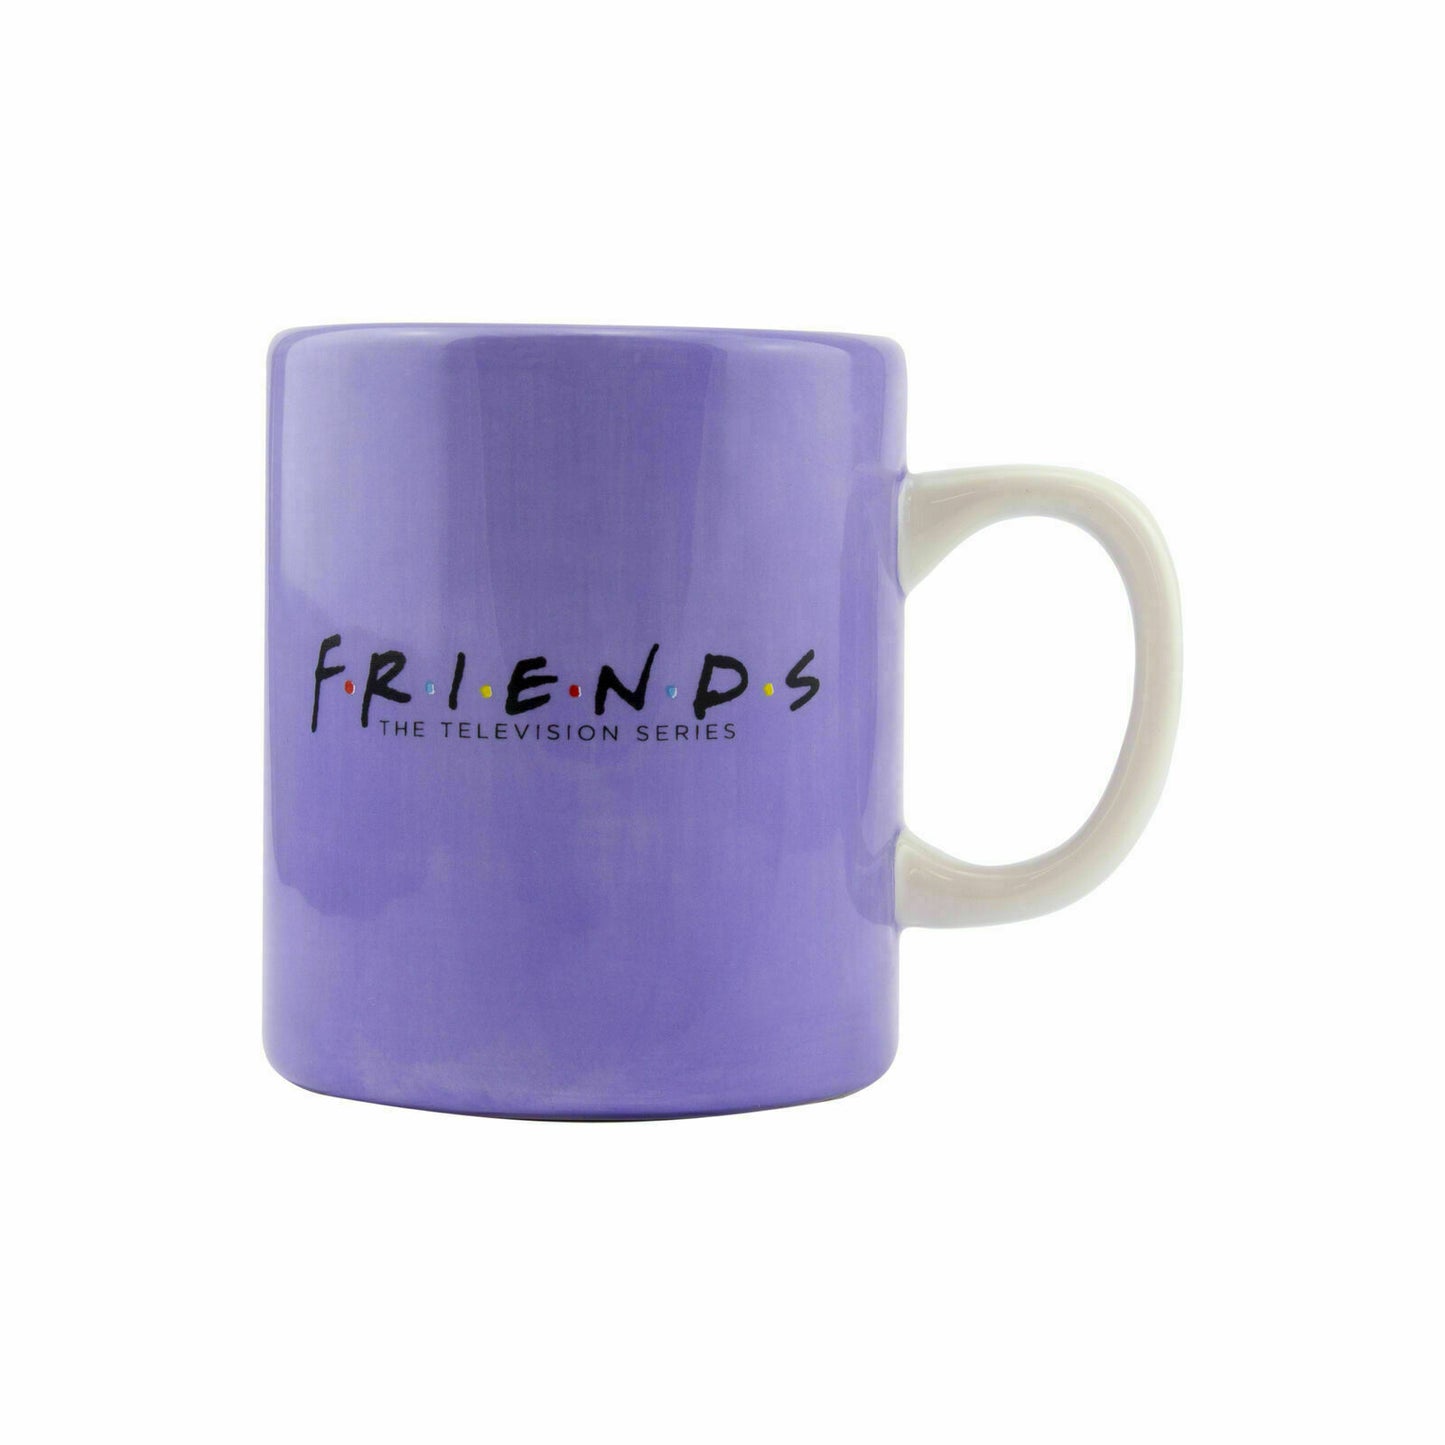 Friends Picture Frame Shaped Ceramic Mug Fun TV Sitcom Family Xmas Gift Present